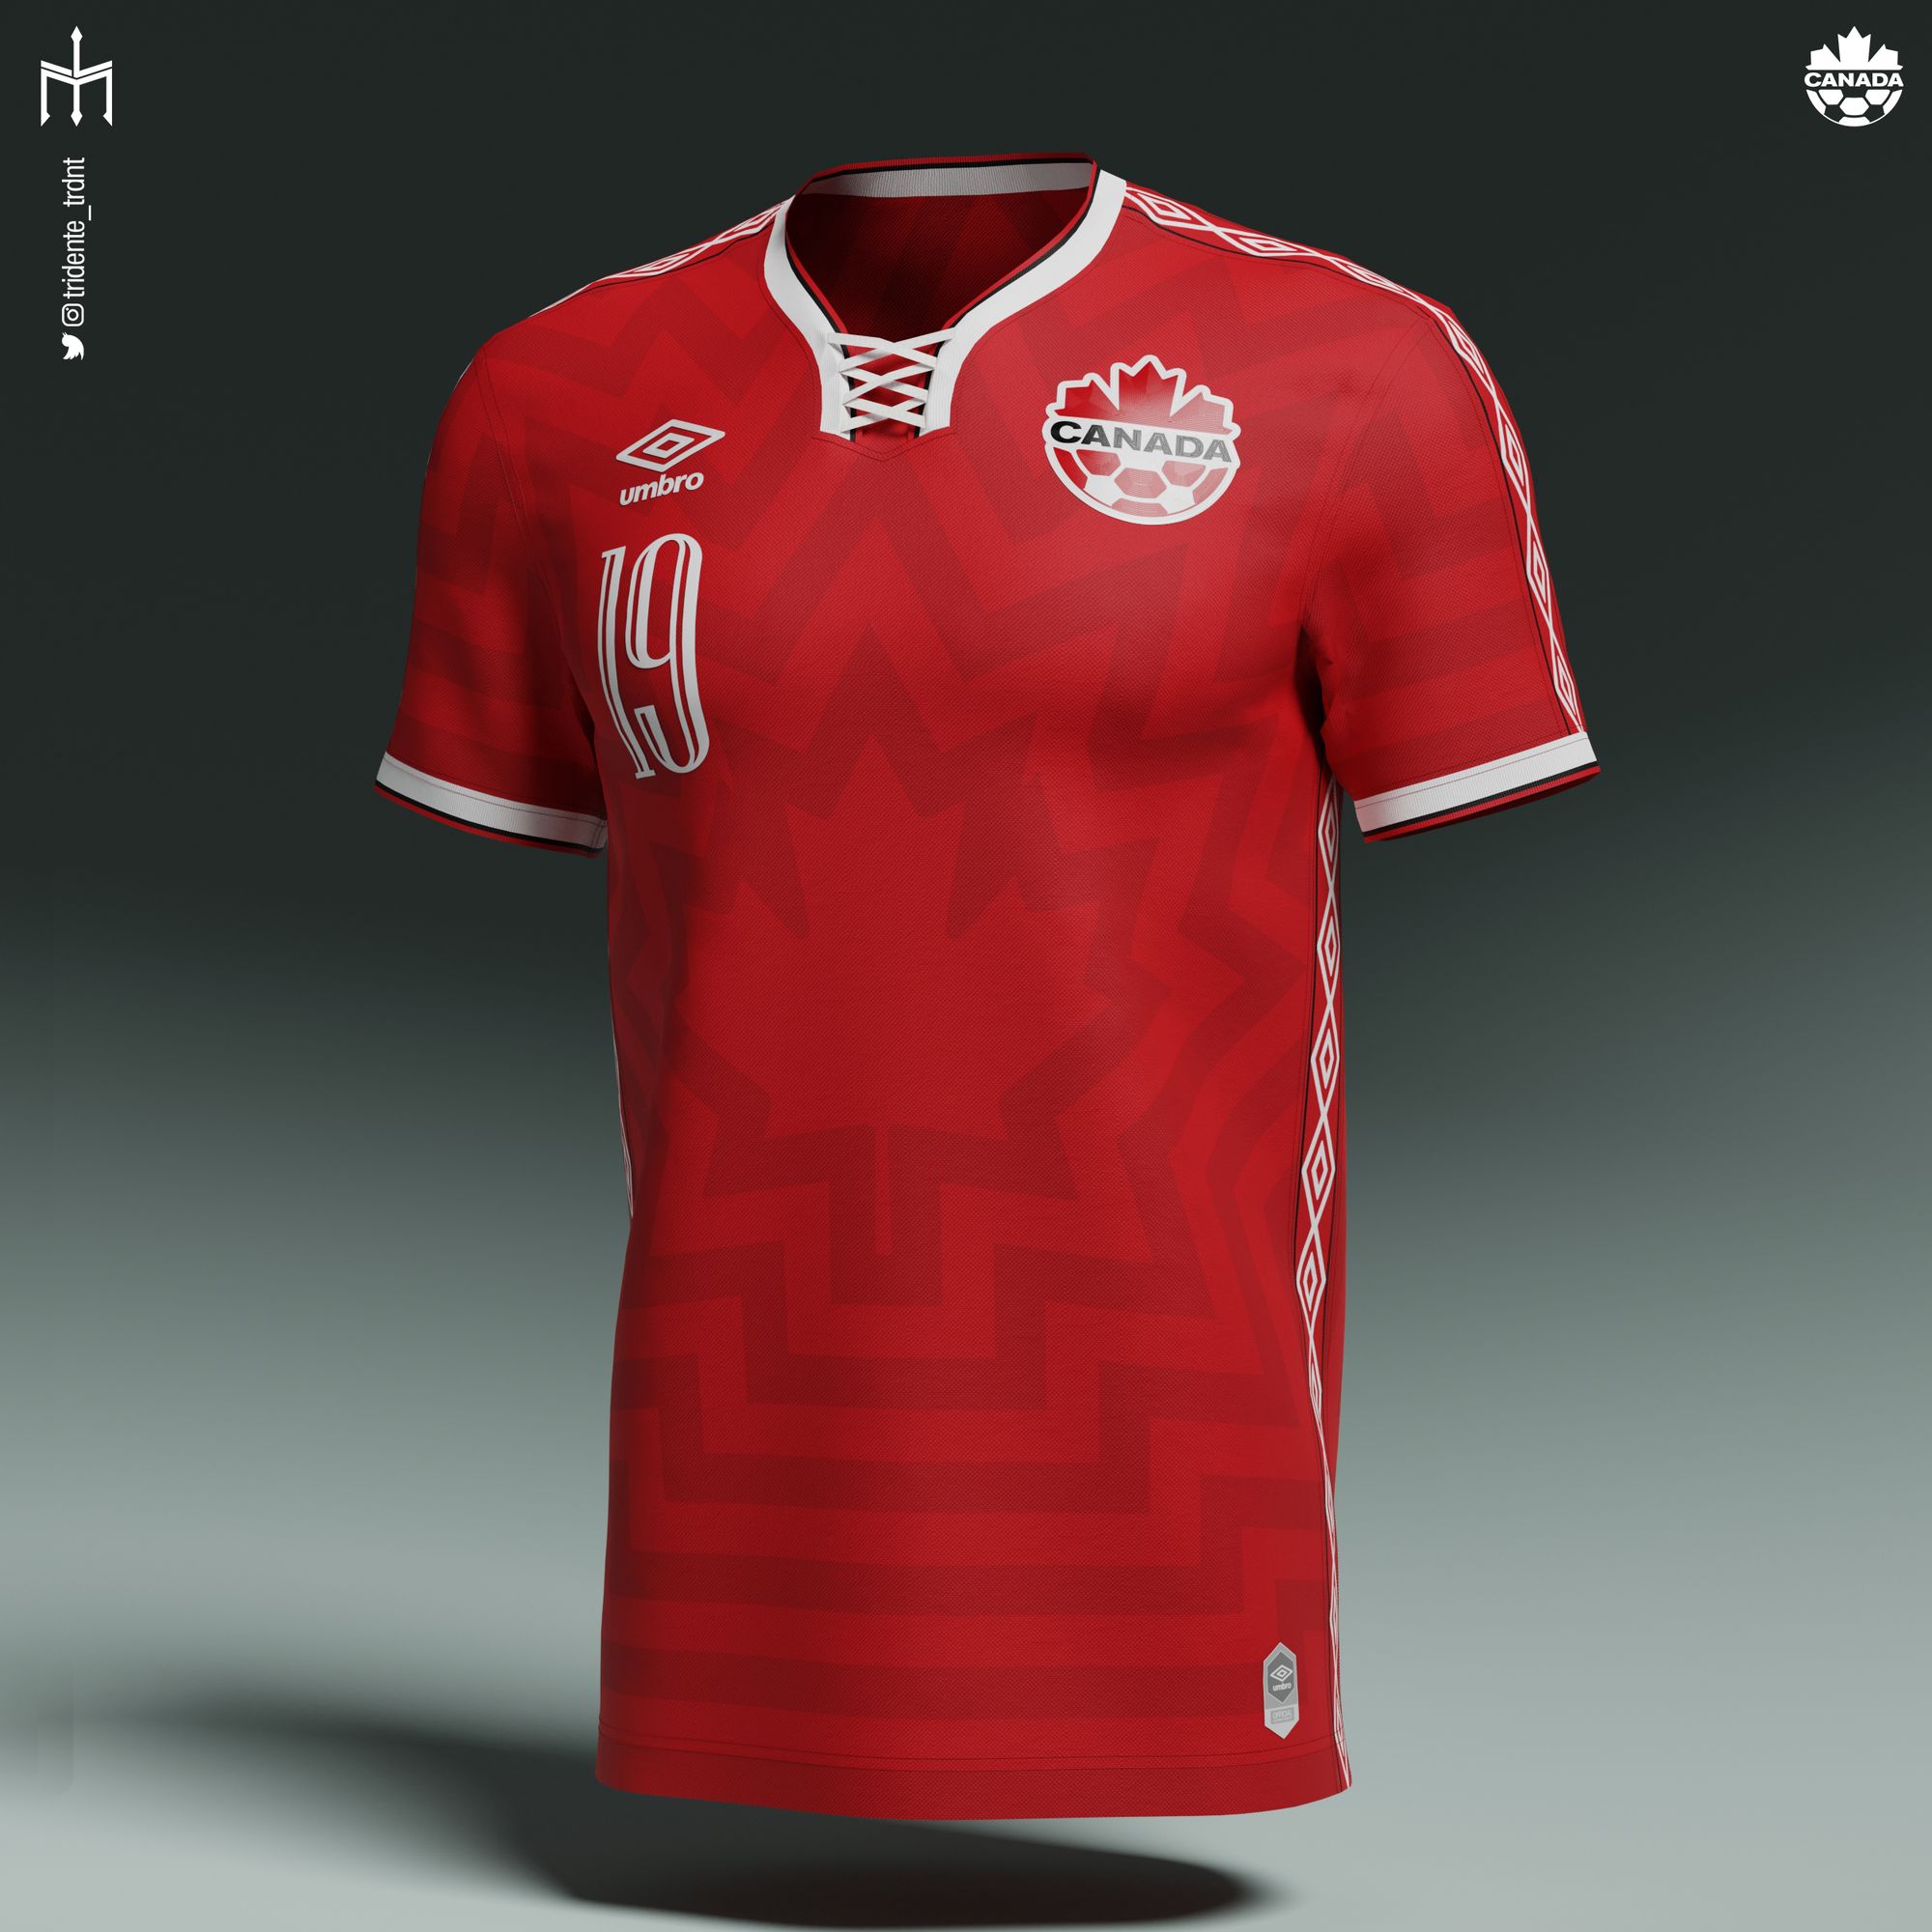 Canada X Umbro Home Shirt Concept by Tridente - Football Shirt Culture ...